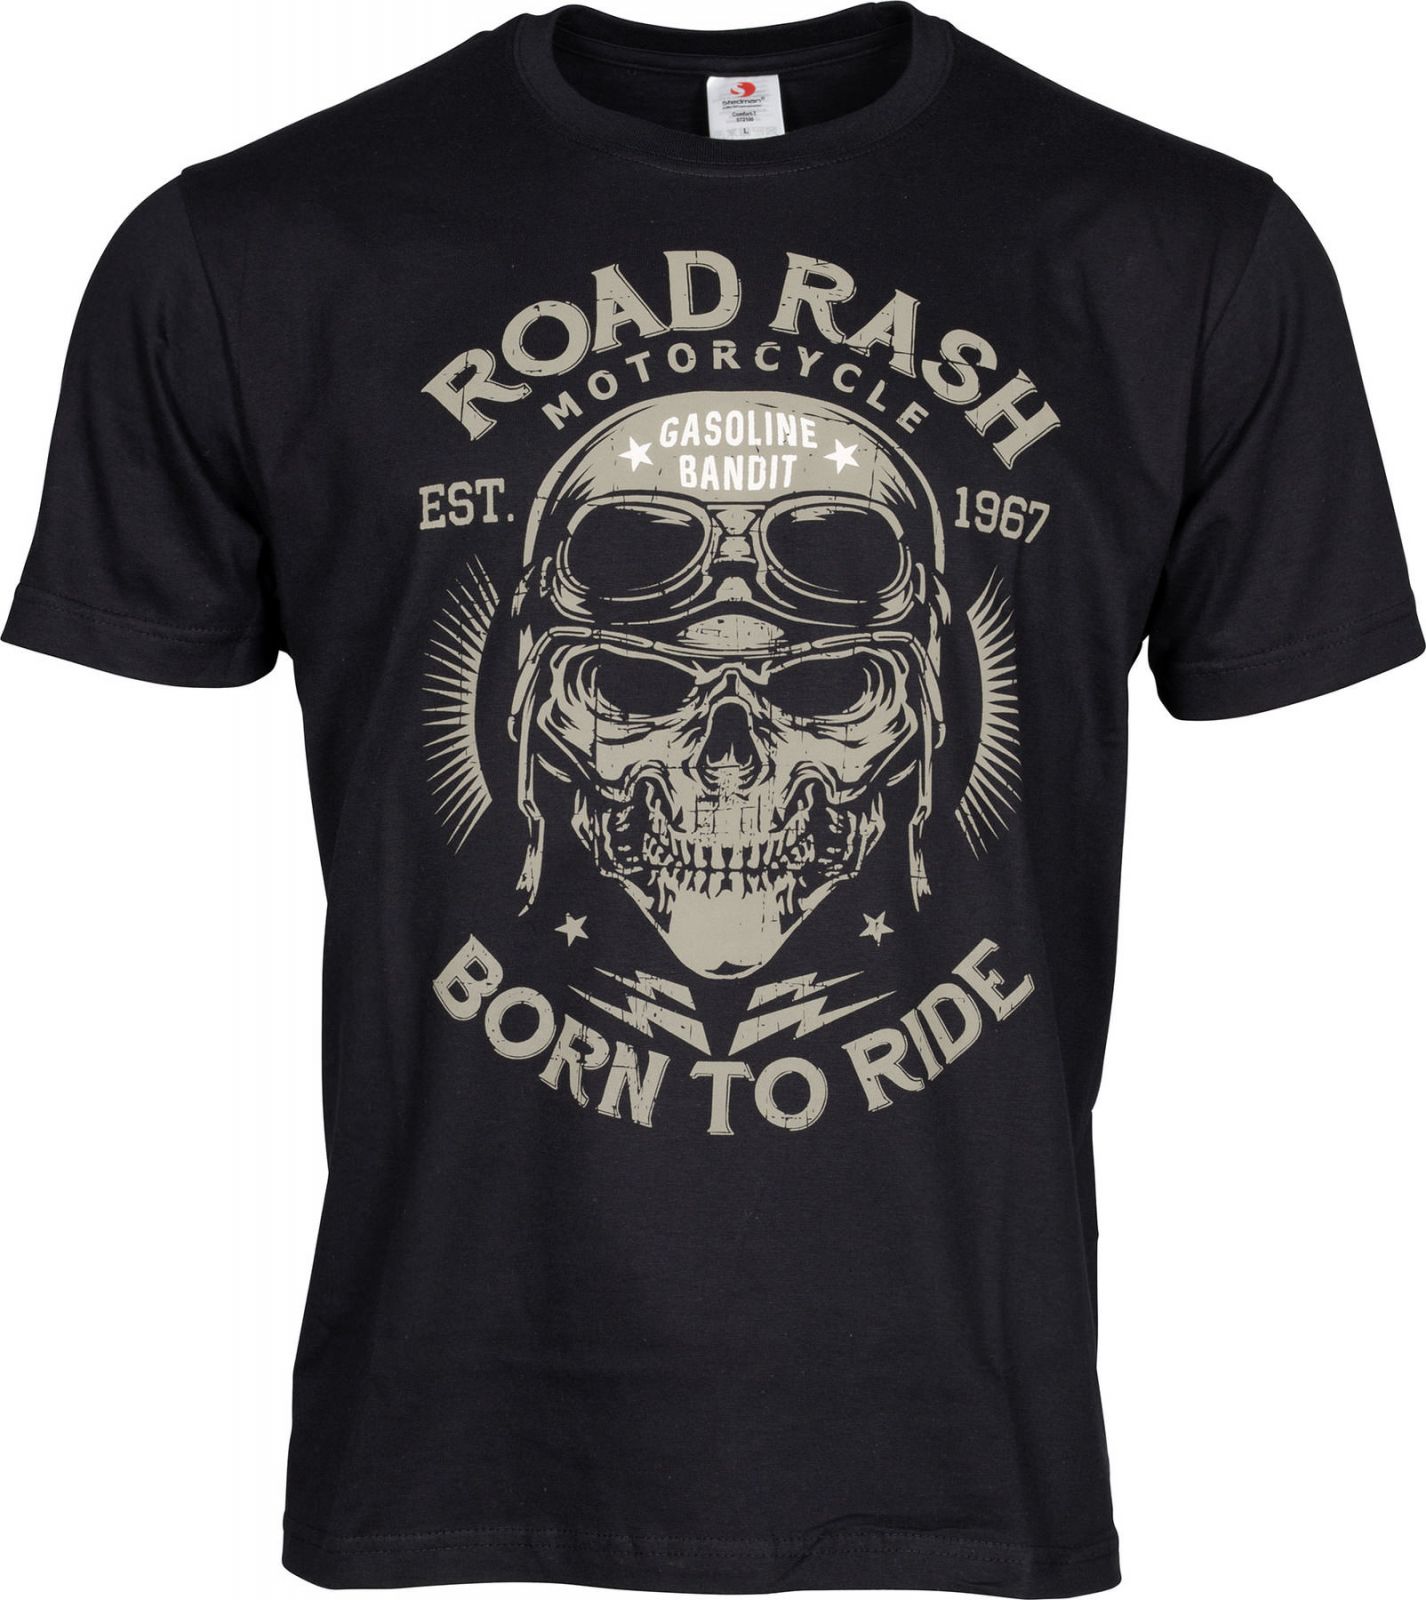 Pánske tričko ROAD RASH čierne Gasoline Bandit